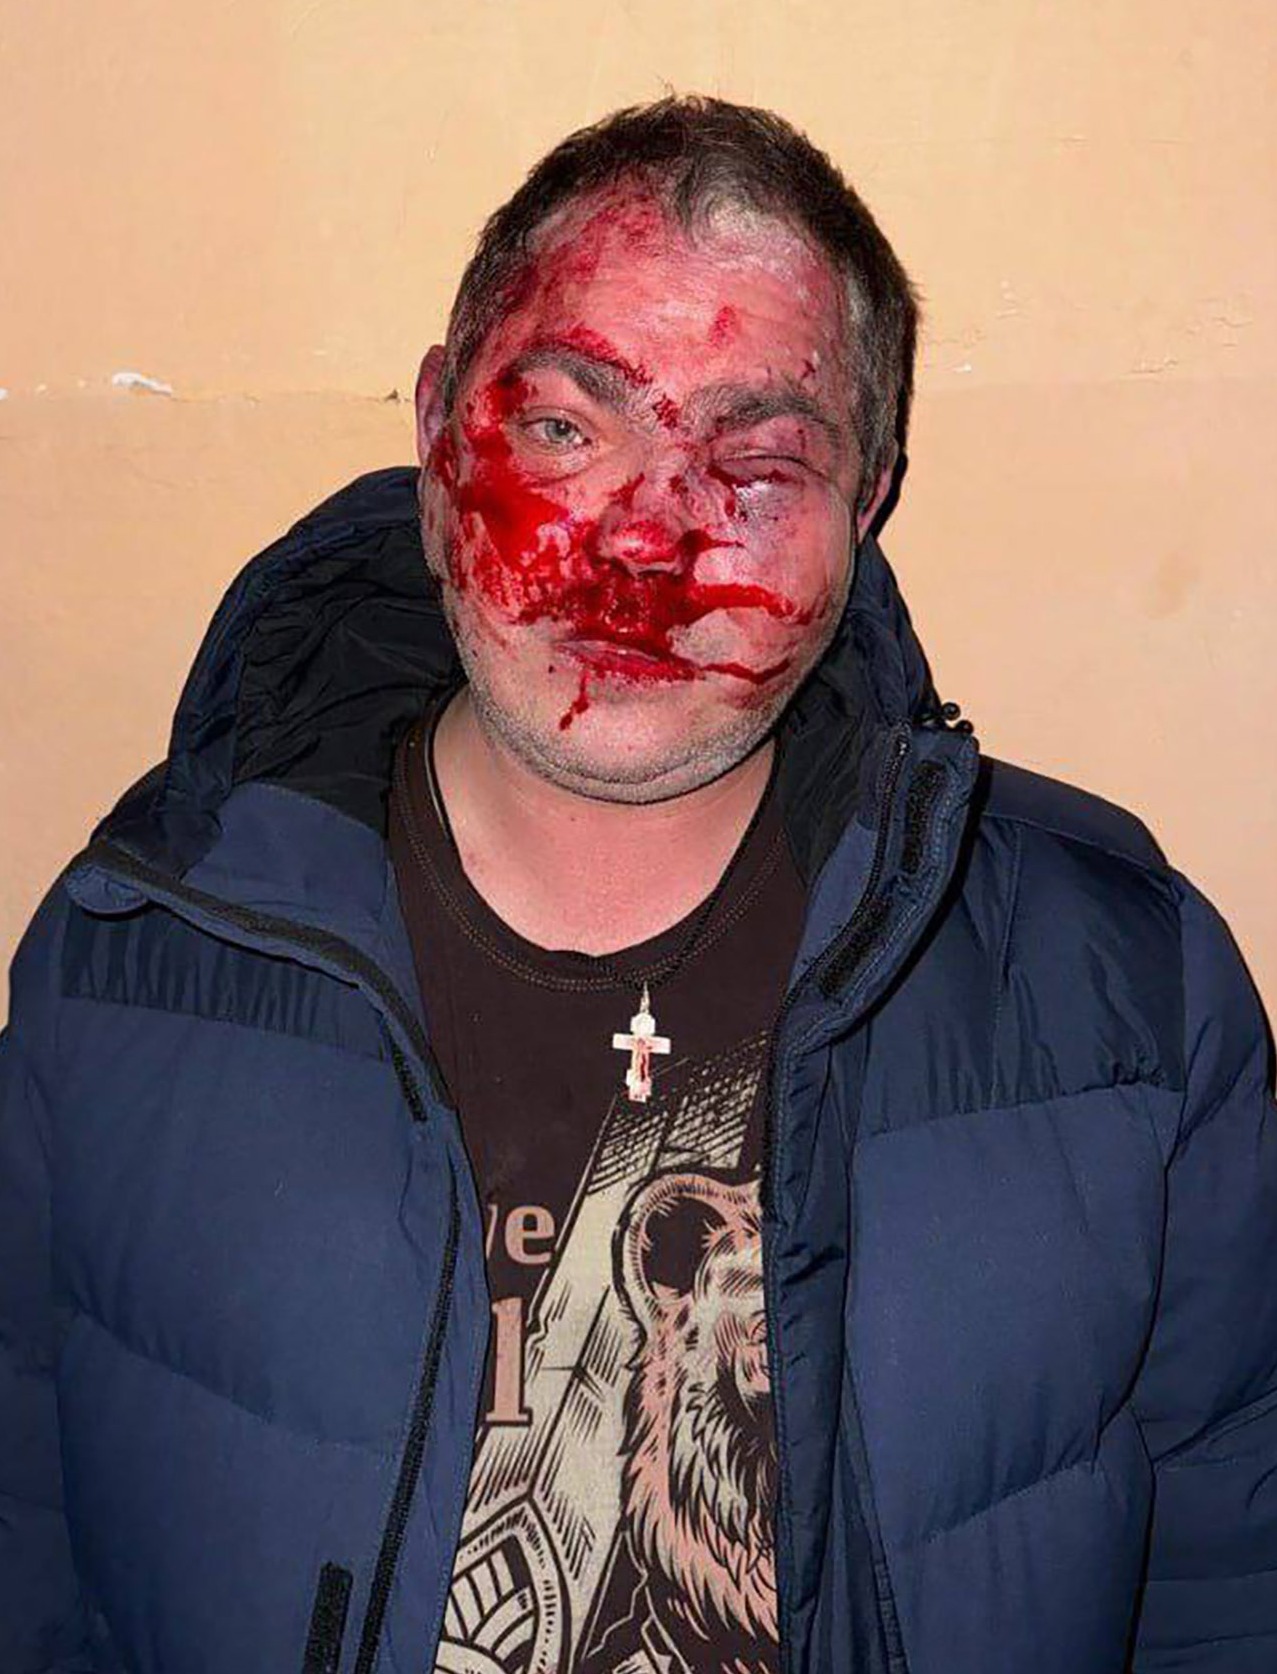 Ein Mann hatte ein blutiges, entstelltes Gesicht